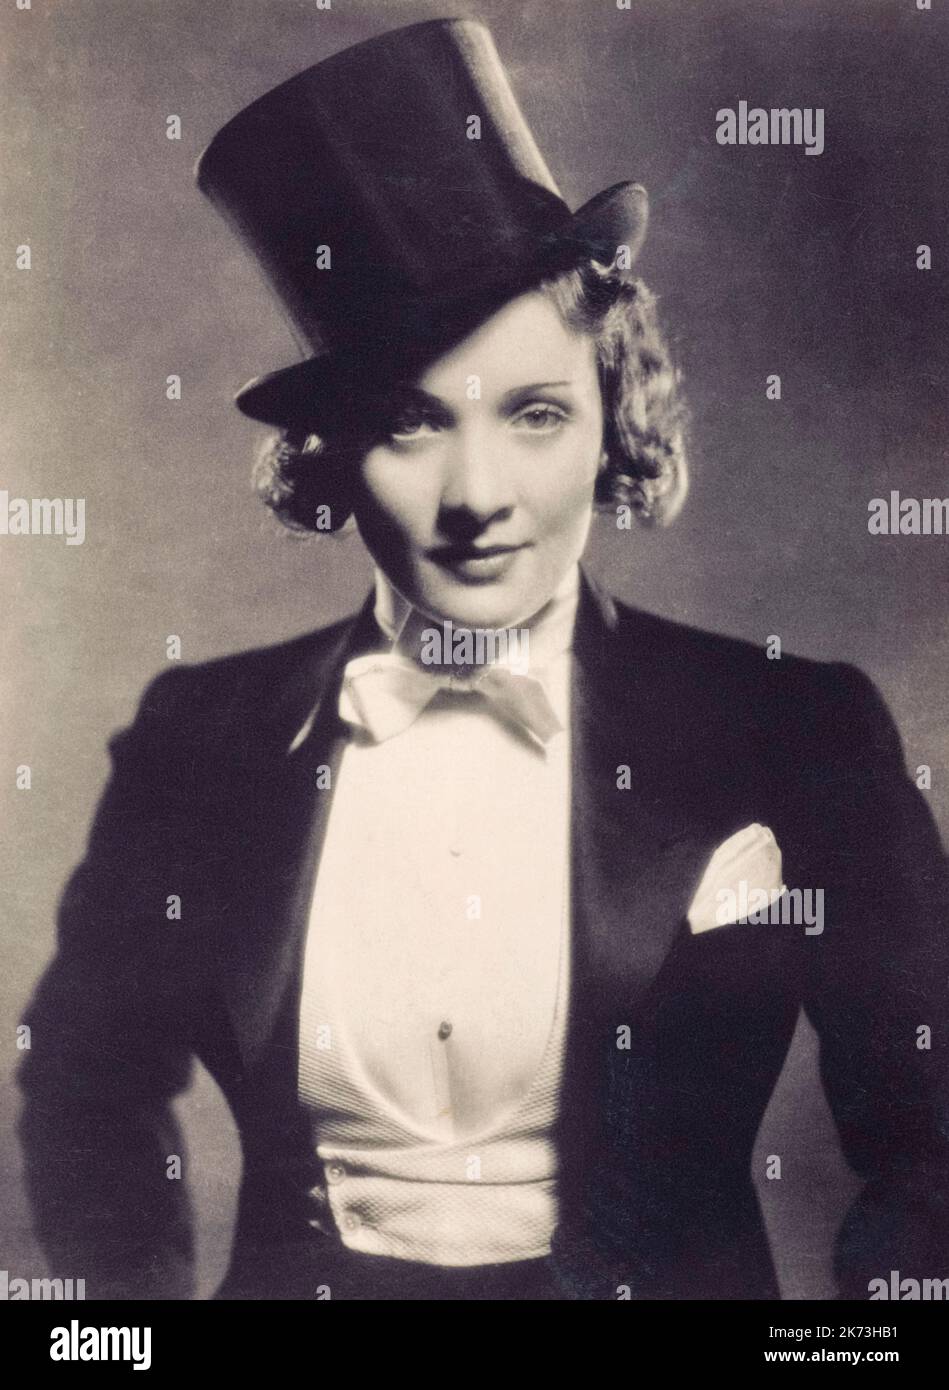 Marlene Dietrich, 1901 - 1992. Attrice cinematografica americana di origine tedesca. Nome completo Marie Magdalene Dietrich. Da una fotografia pubblicitaria degli anni '30. SOLO EDITORIALE. Foto Stock